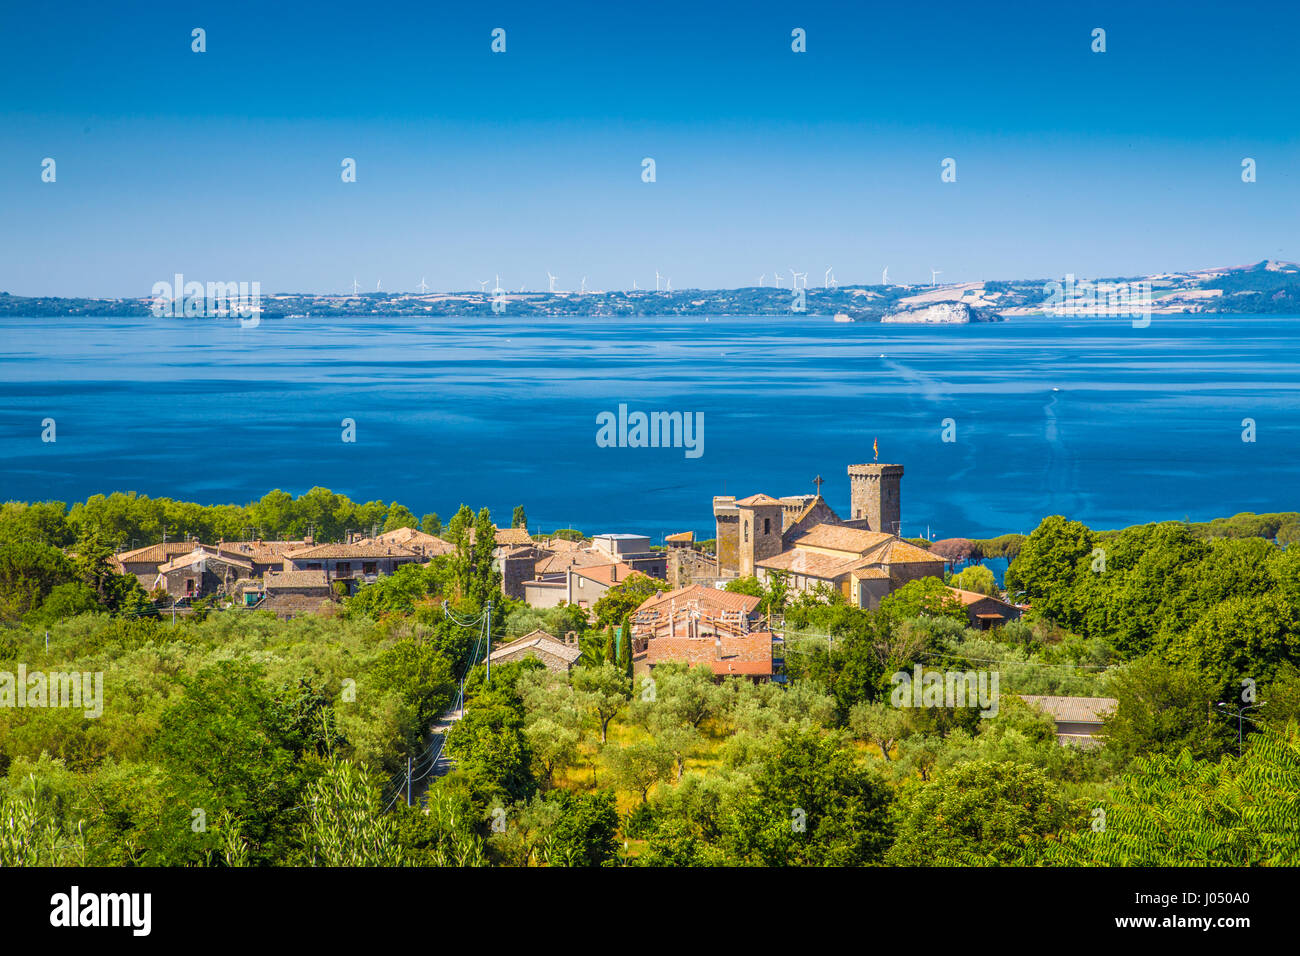 Vista panorámica del lago de Bolsena (Lago di Bolsena), provincia de Viterbo, Lacio, Italia central Foto de stock